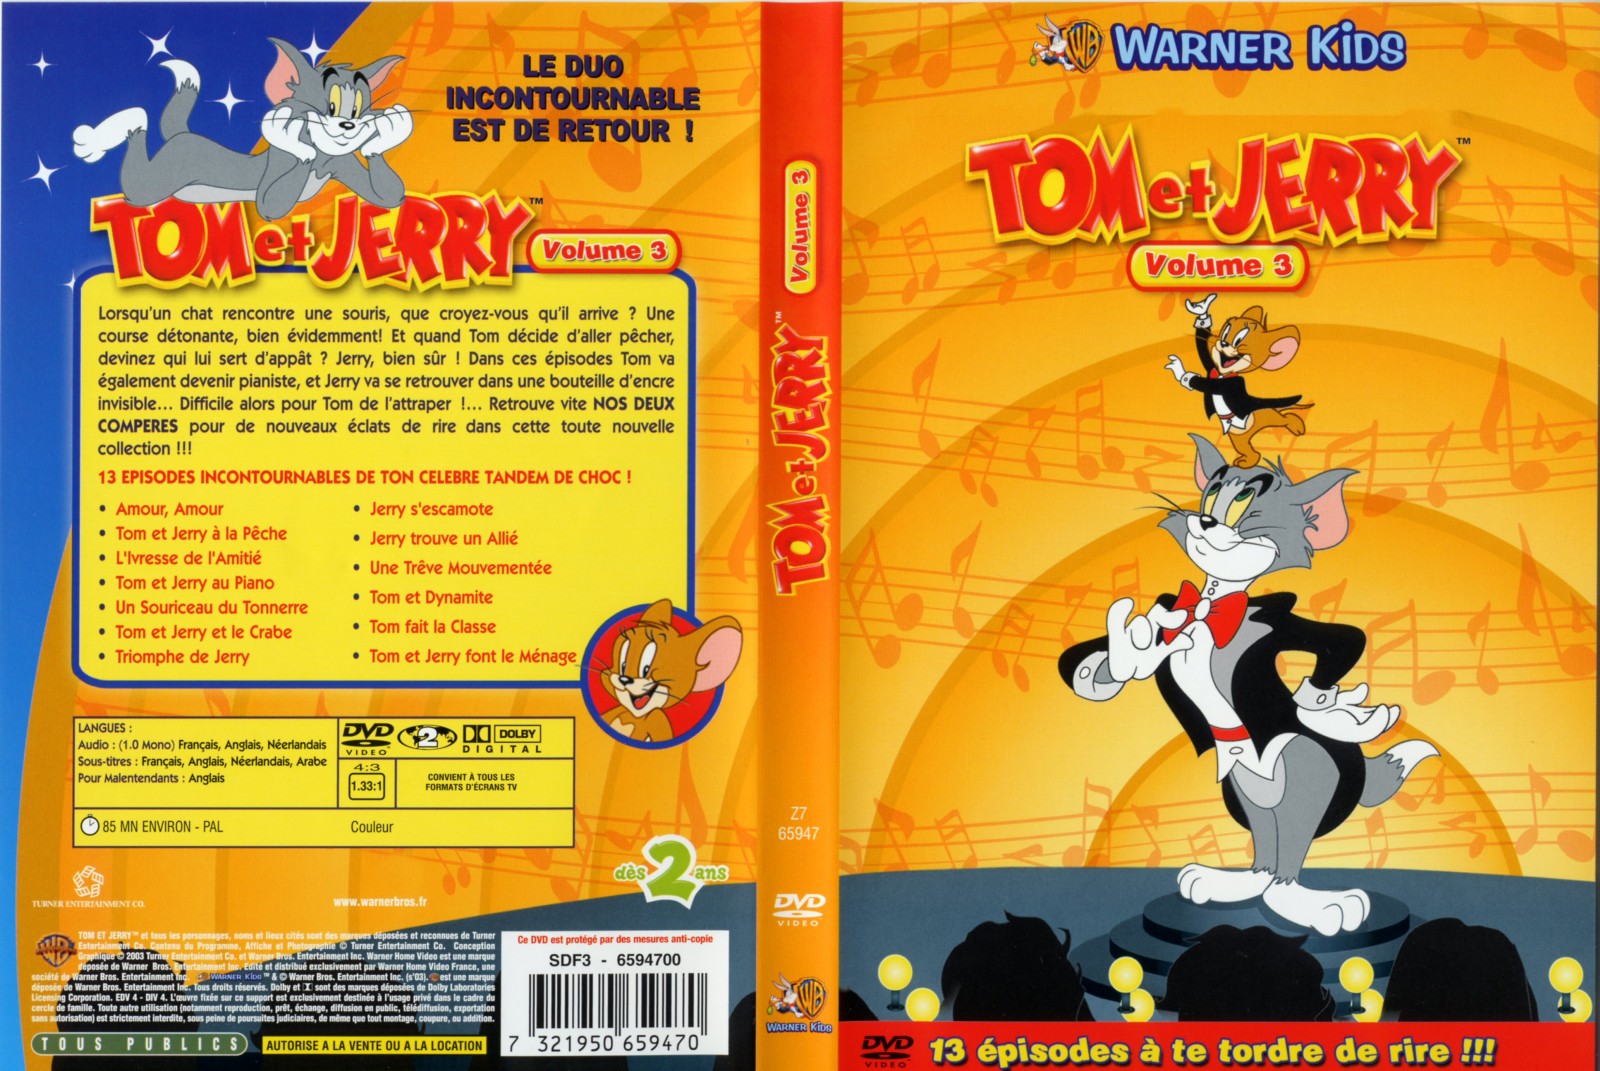 Jaquette DVD Tom et Jerry vol 3